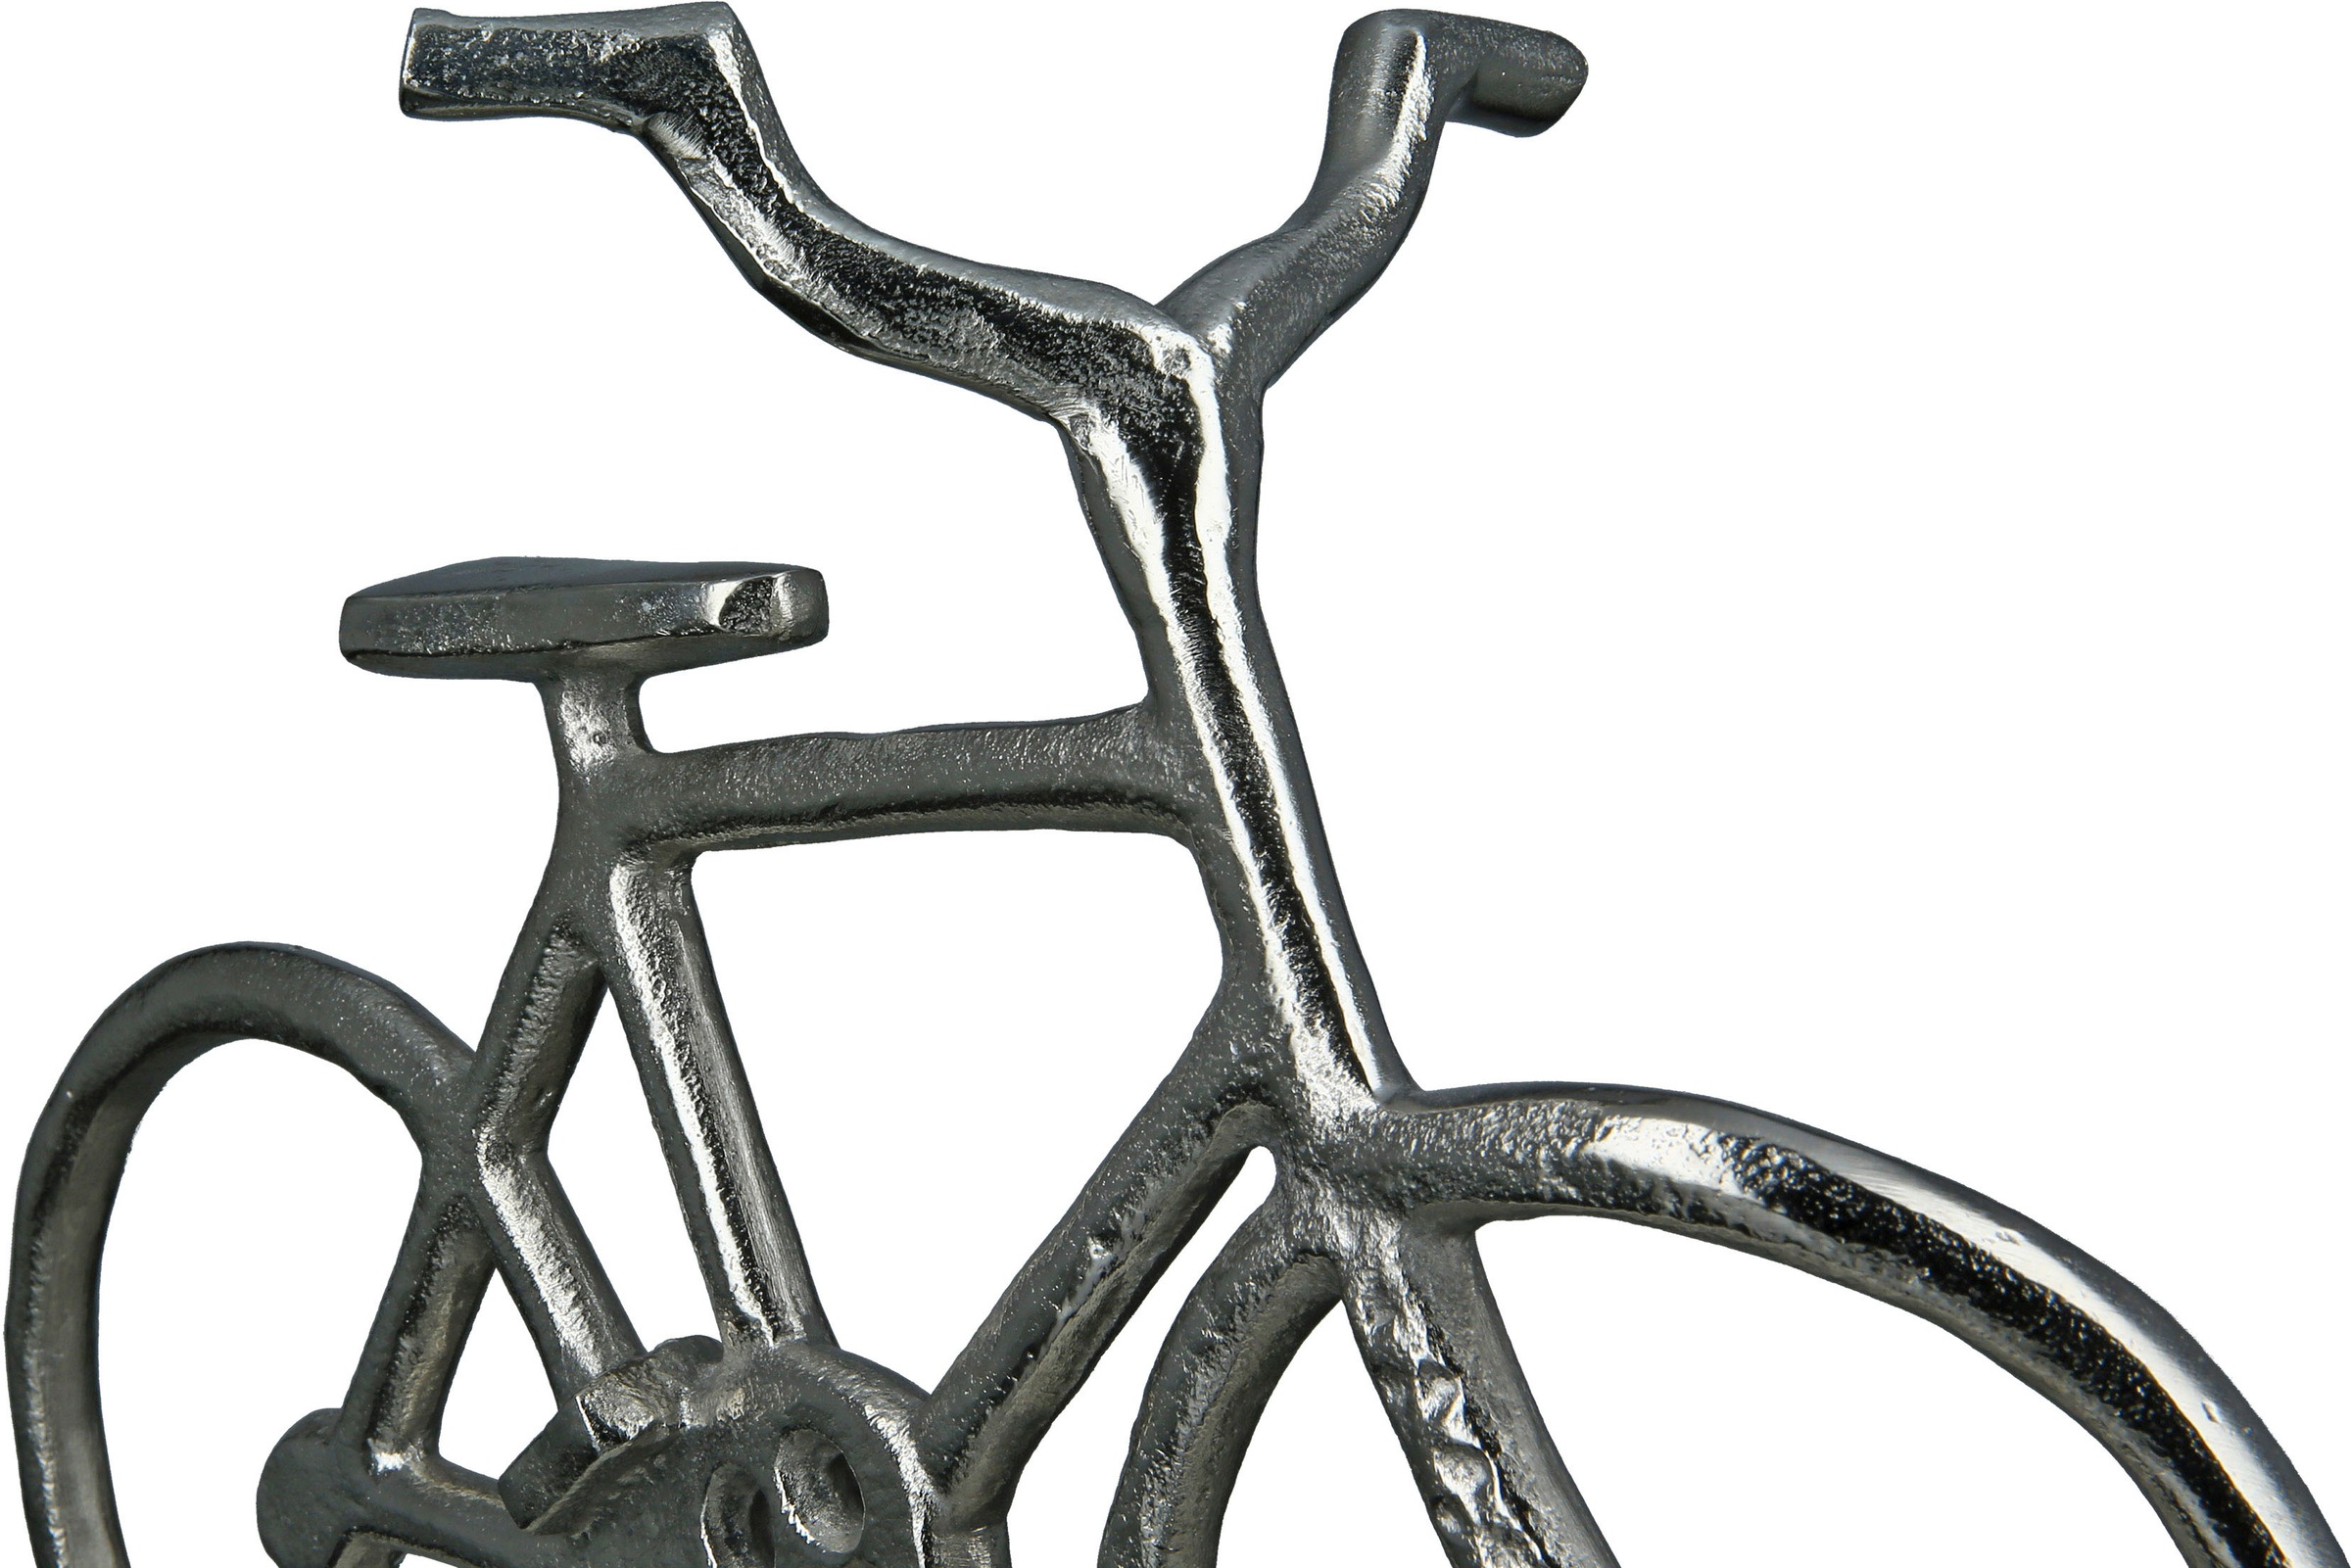 GILDE Dekofigur »Fahrrad auf Base, silber«, Dekoobjekt, aus Metall, Höhe 28 cm, Wohnzimmer